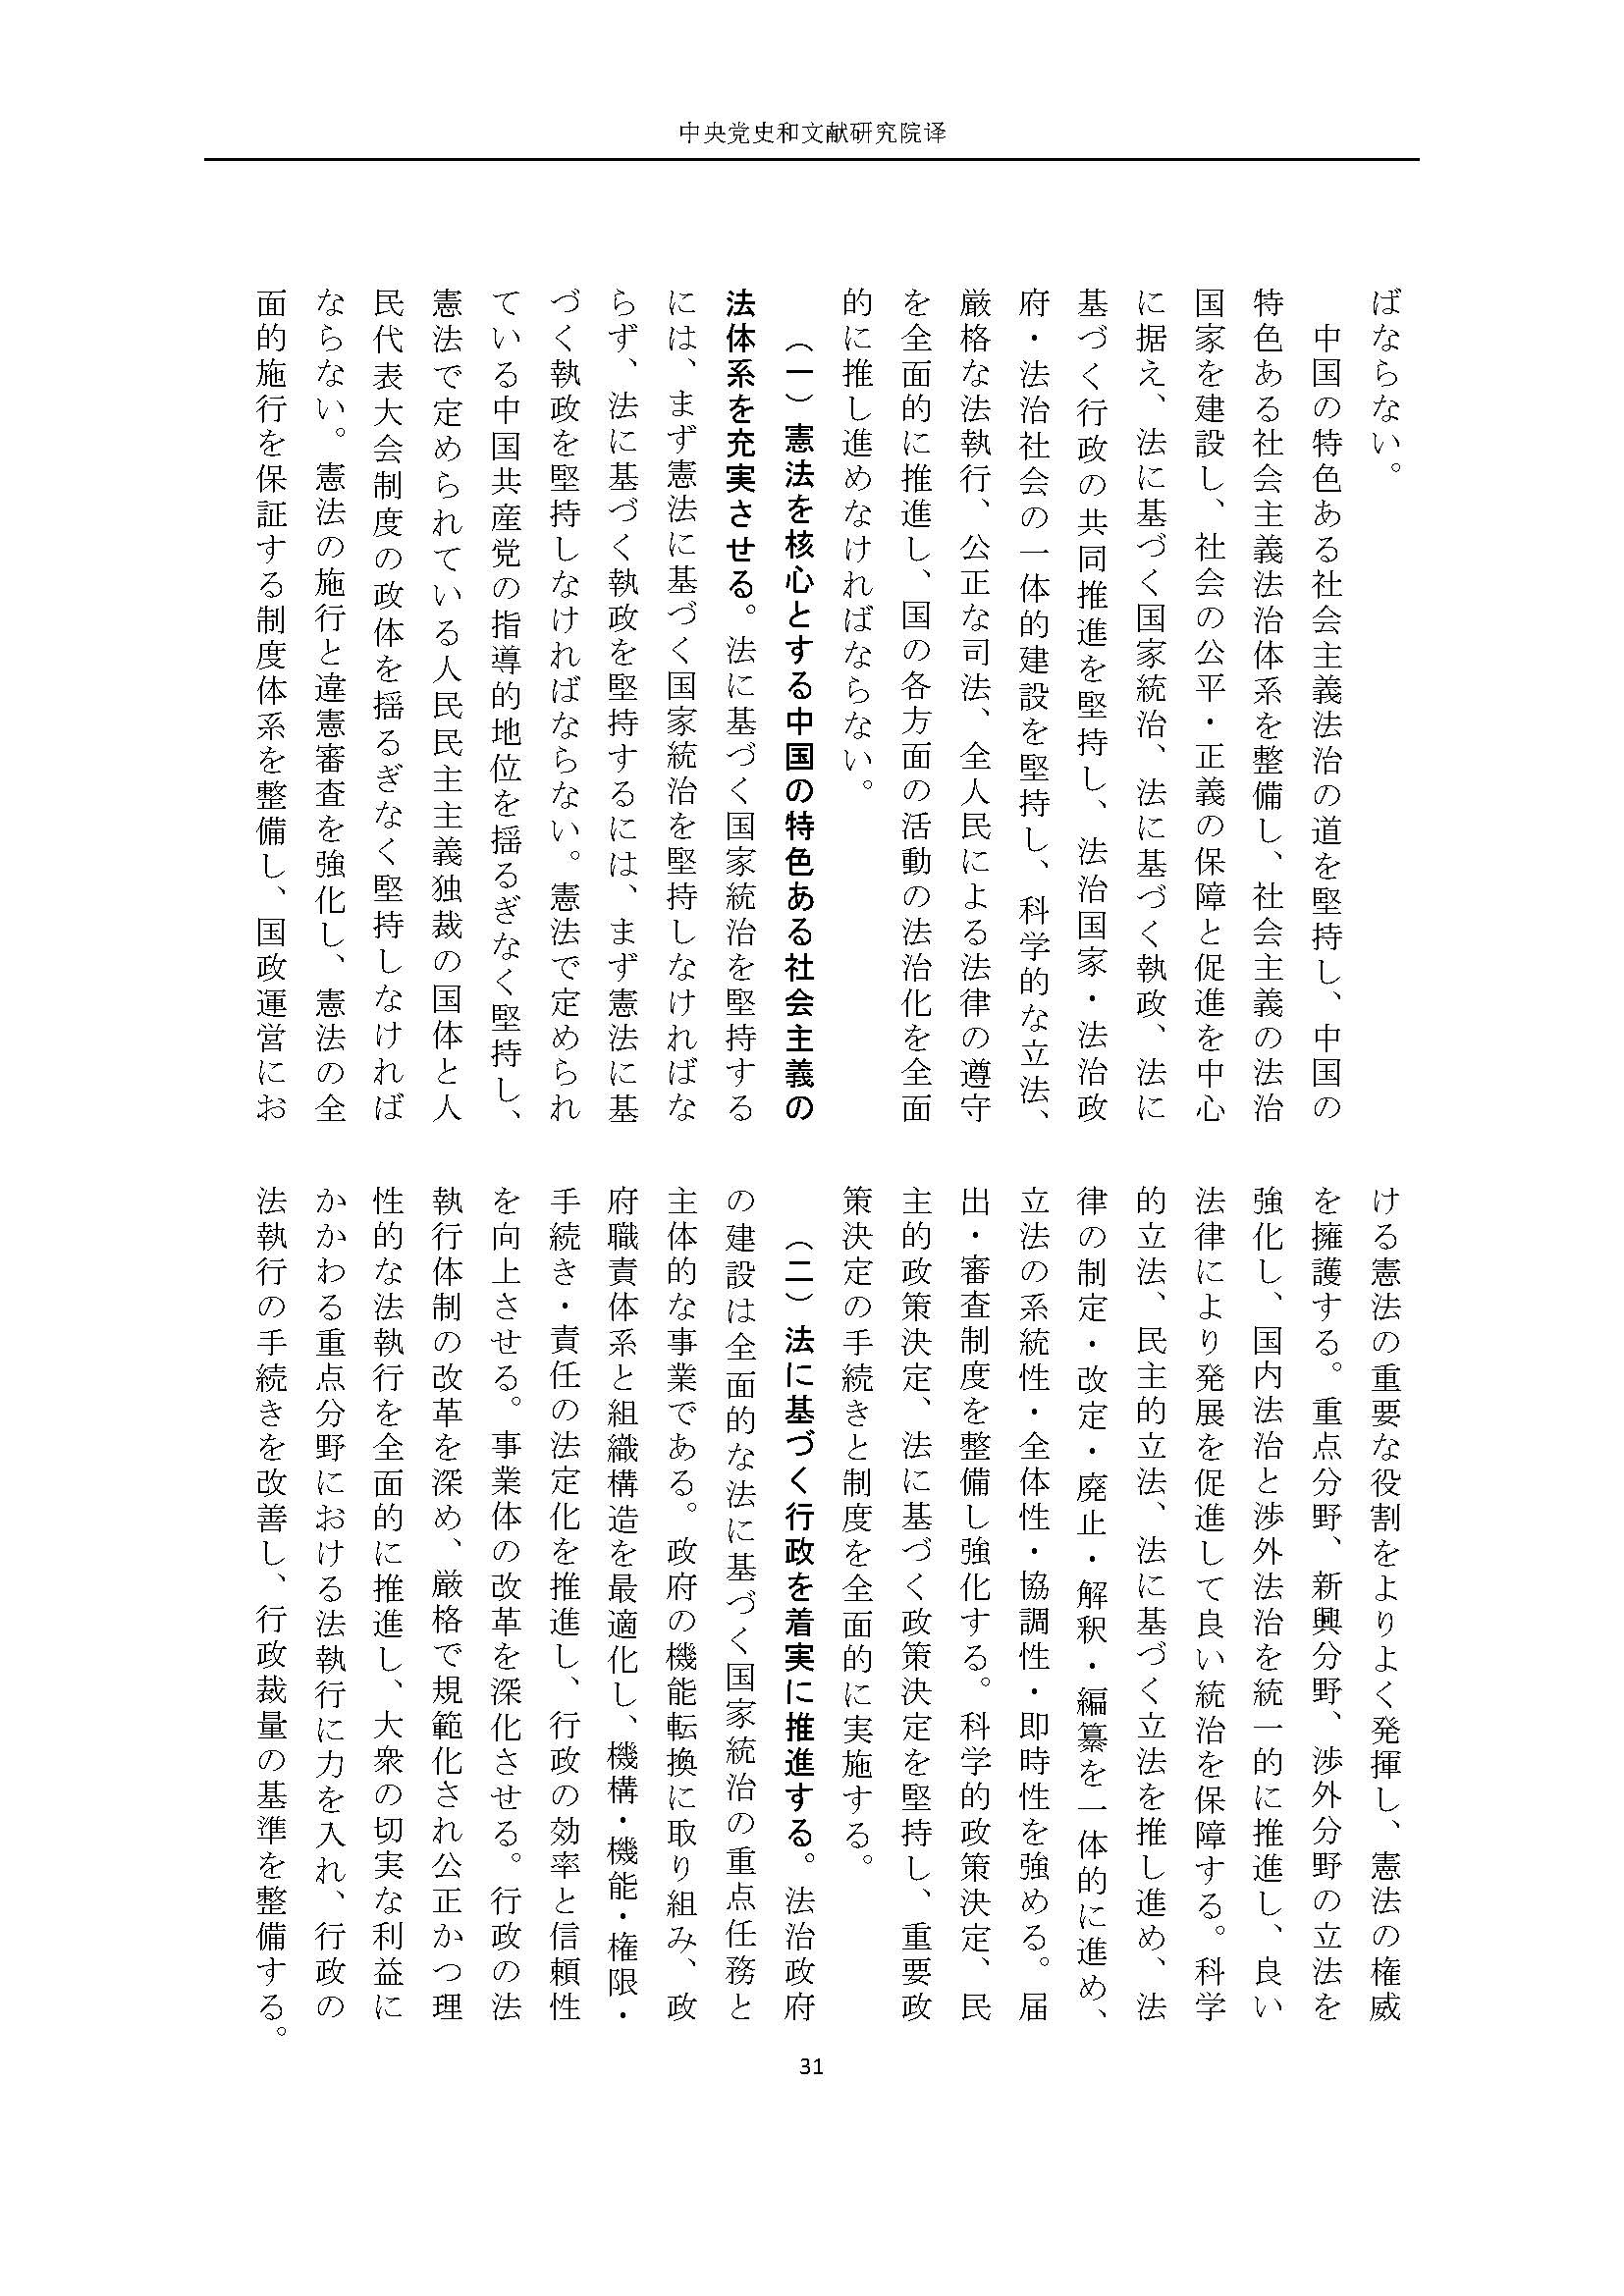 二十大报告（日文全文）_页面_32